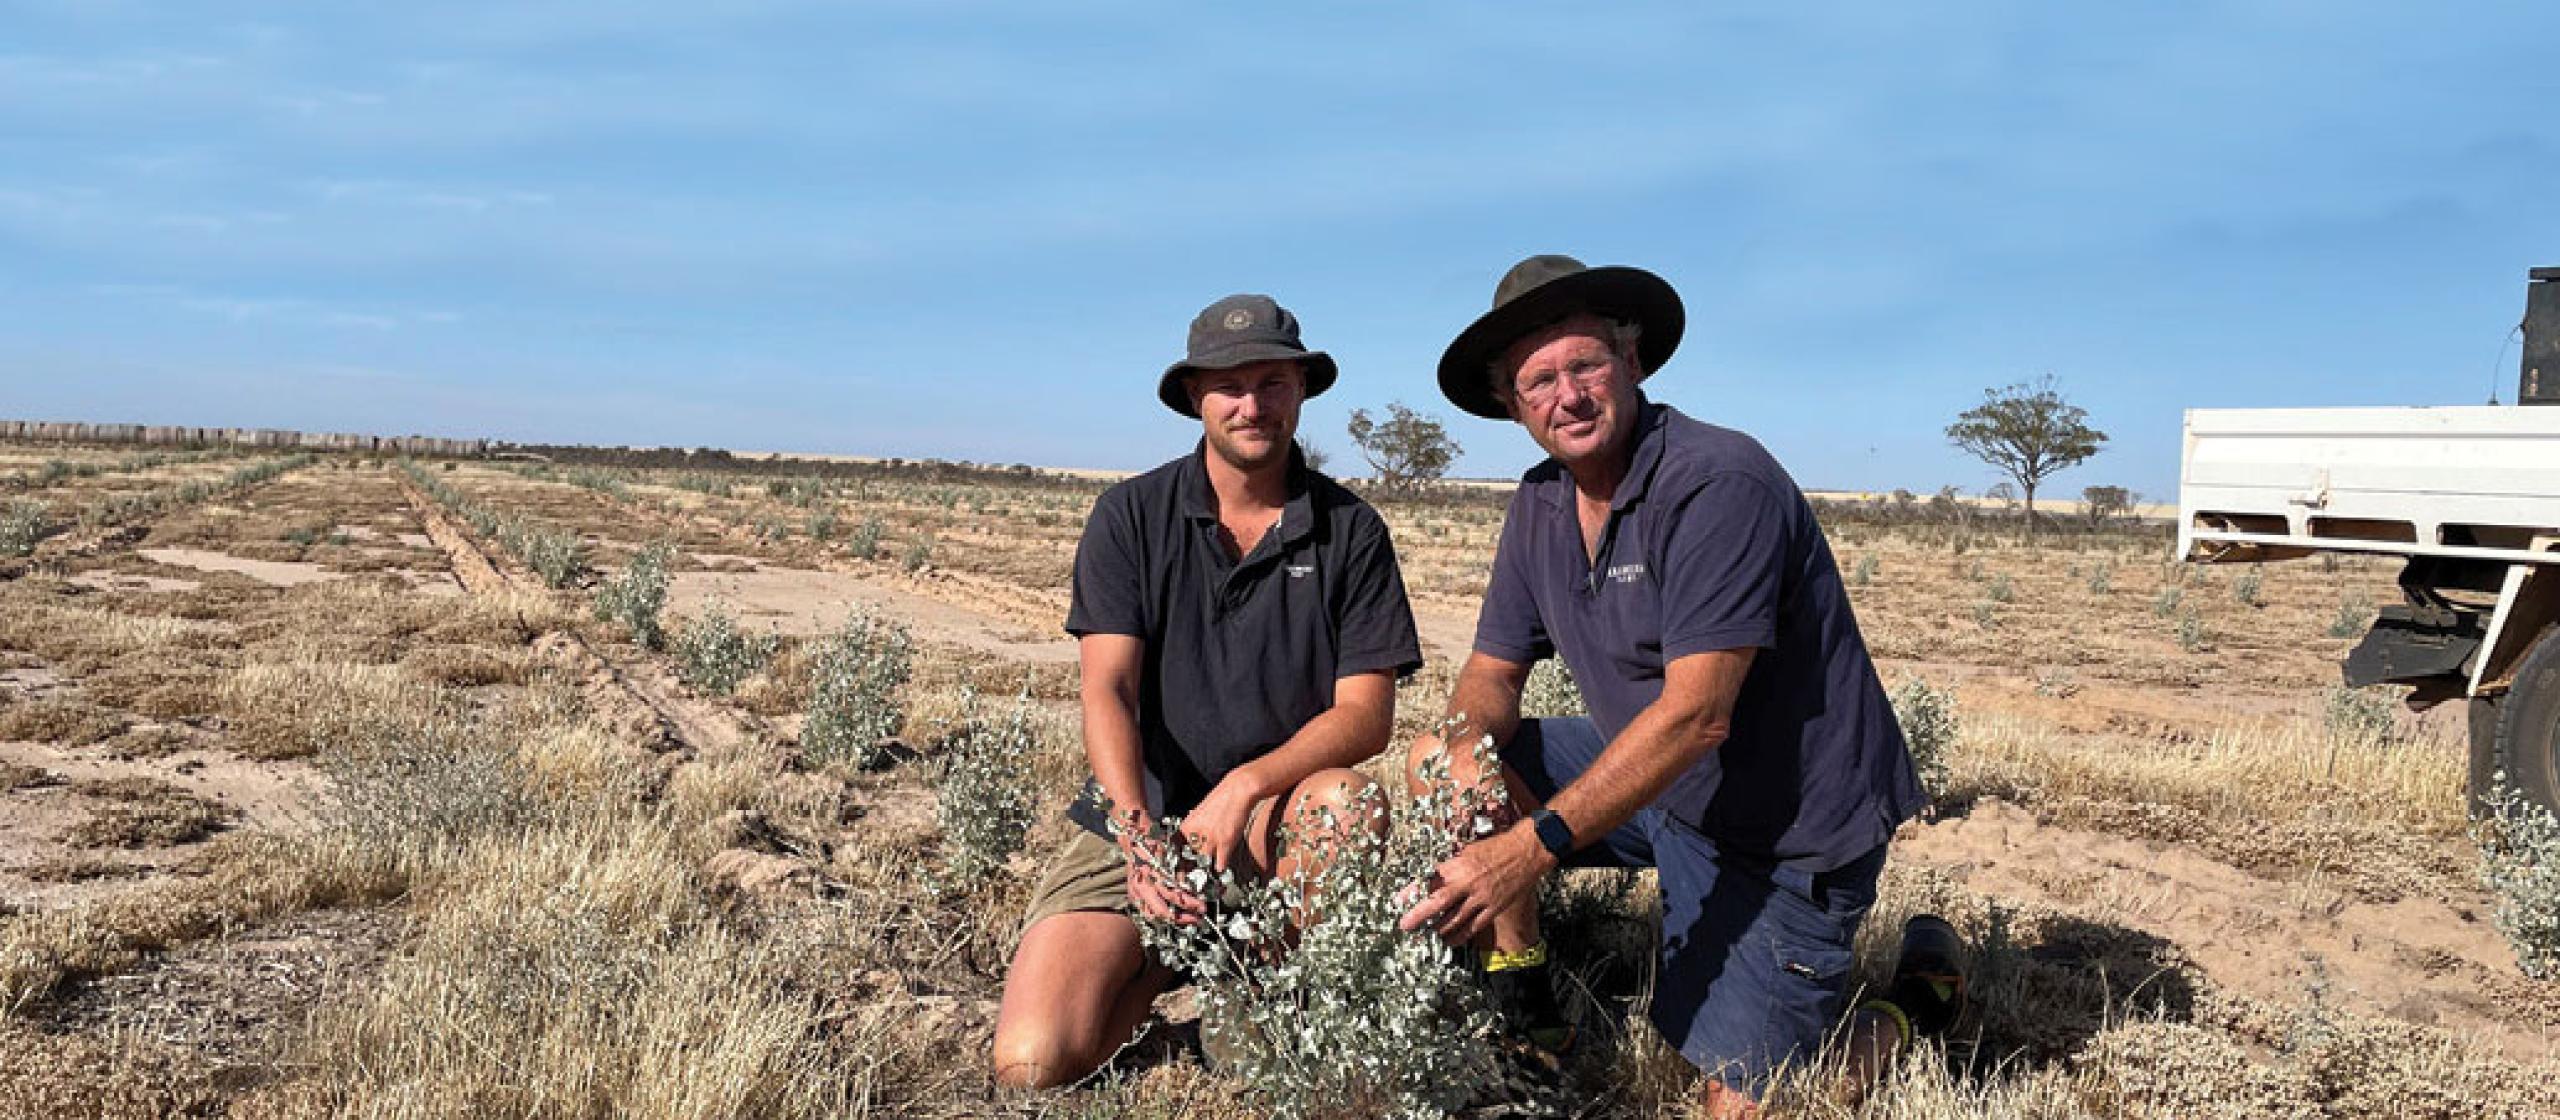 Tony York and his son Oscar inspecting saltbush on their farm in Western Australia